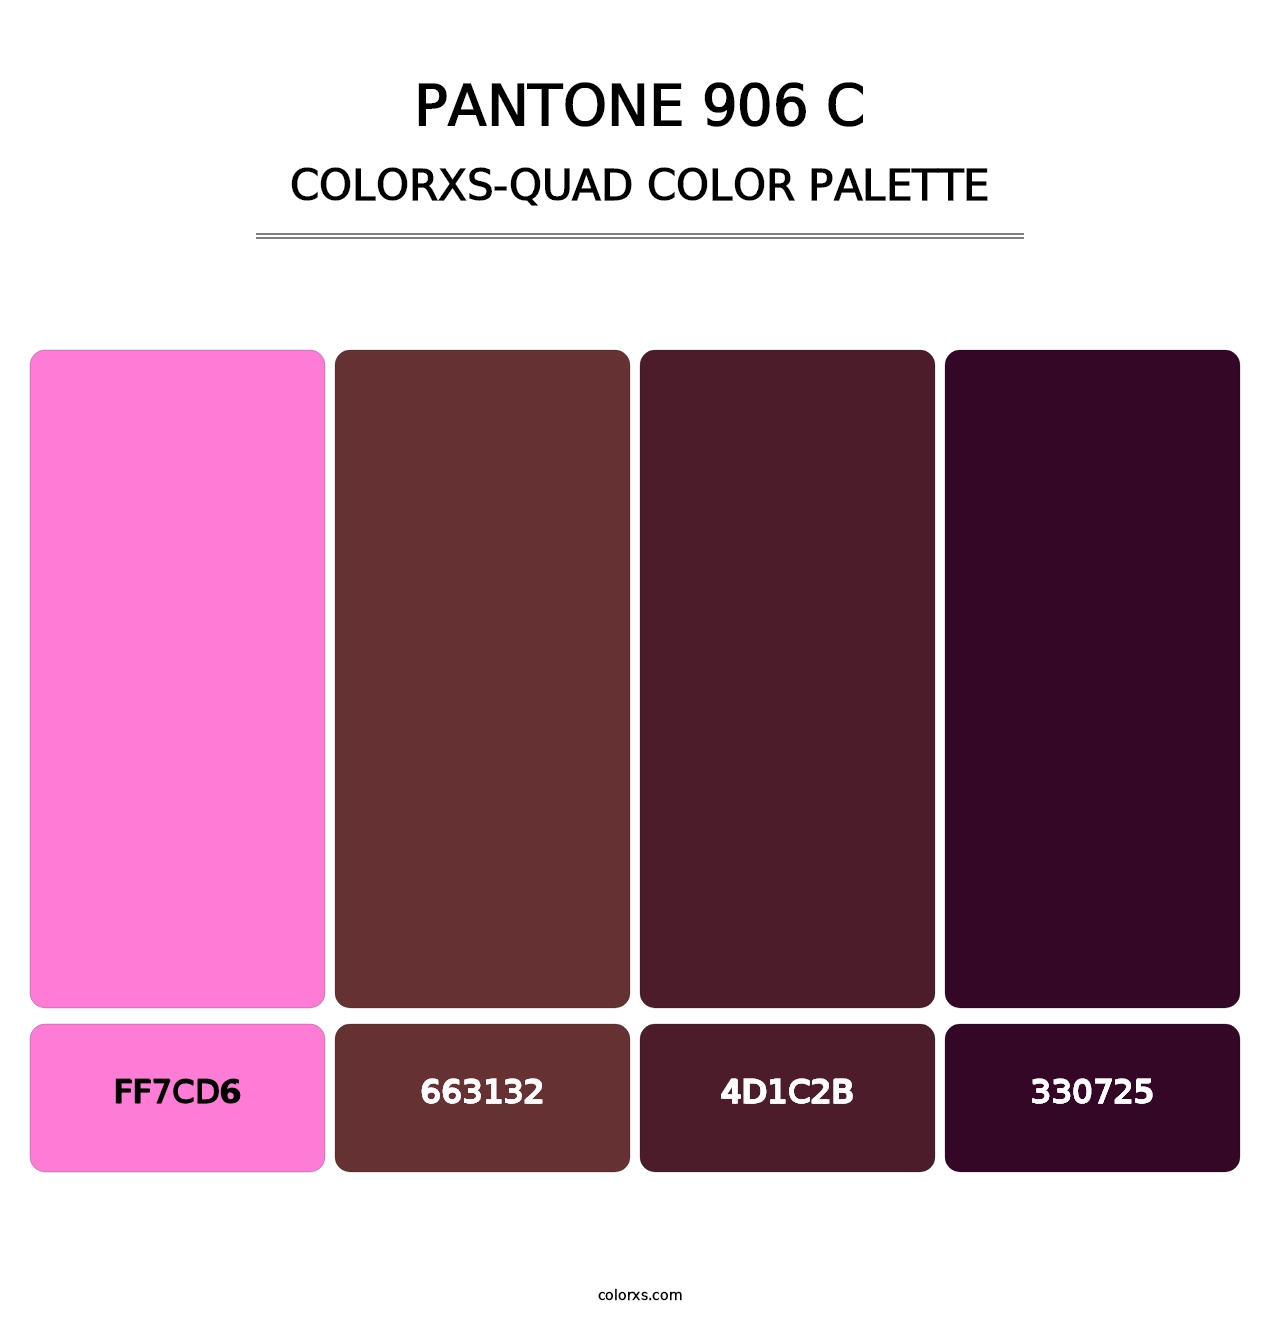 PANTONE 906 C - Colorxs Quad Palette